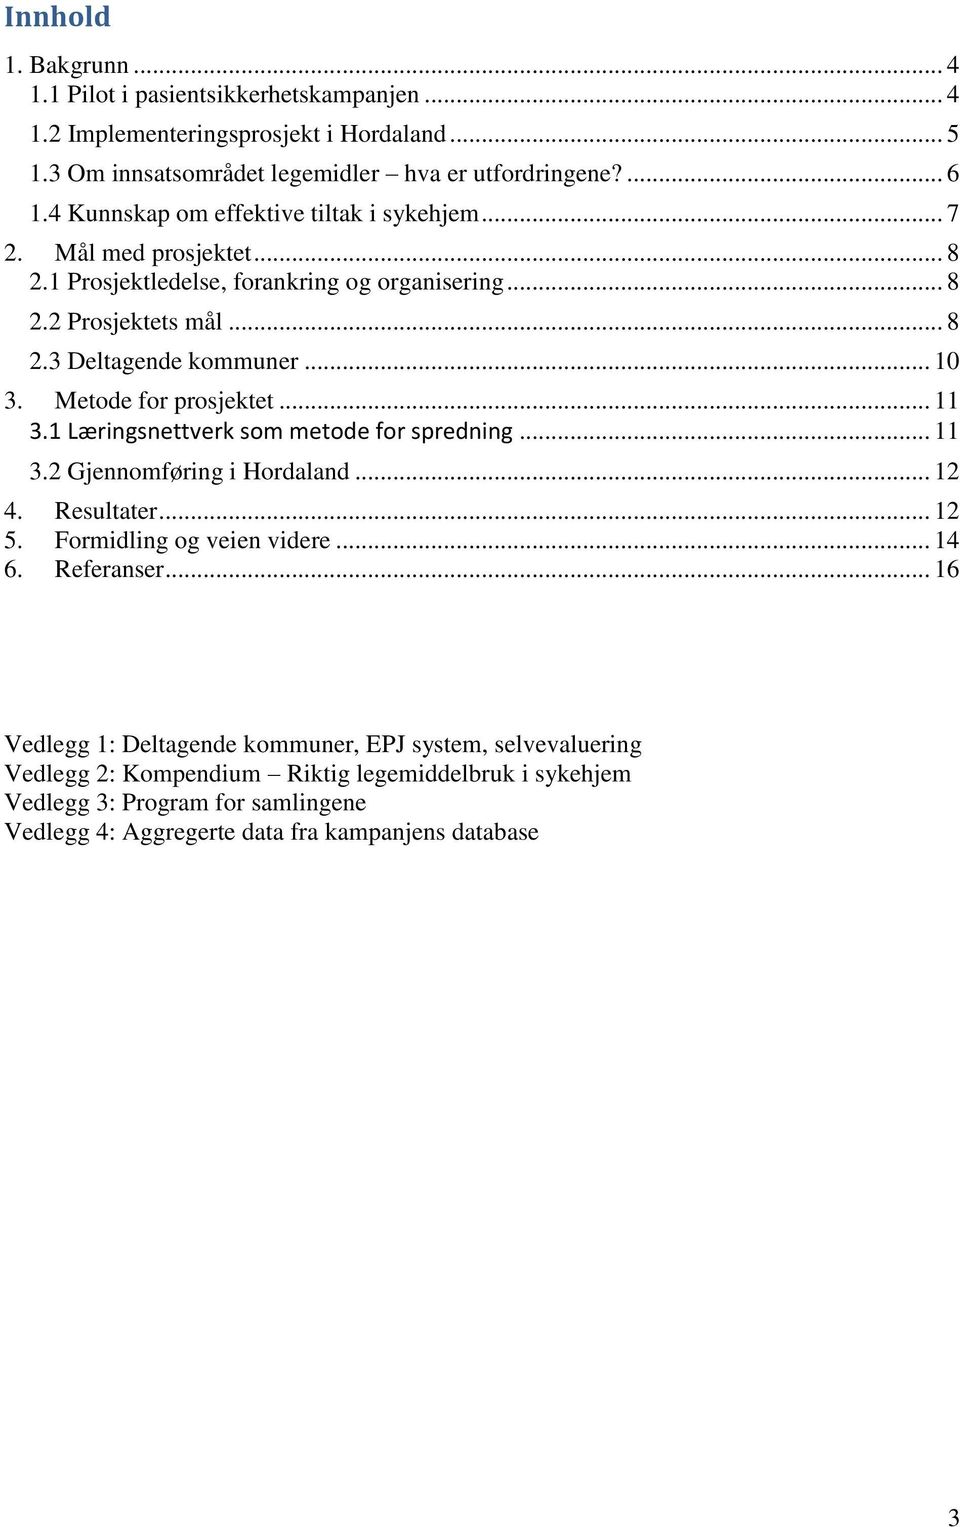 Metode for prosjektet... 11 3.1 Læringsnettverk som metode for spredning... 11 3.2 Gjennomføring i Hordaland... 12 4. Resultater... 12 5. Formidling og veien videre... 14 6. Referanser.